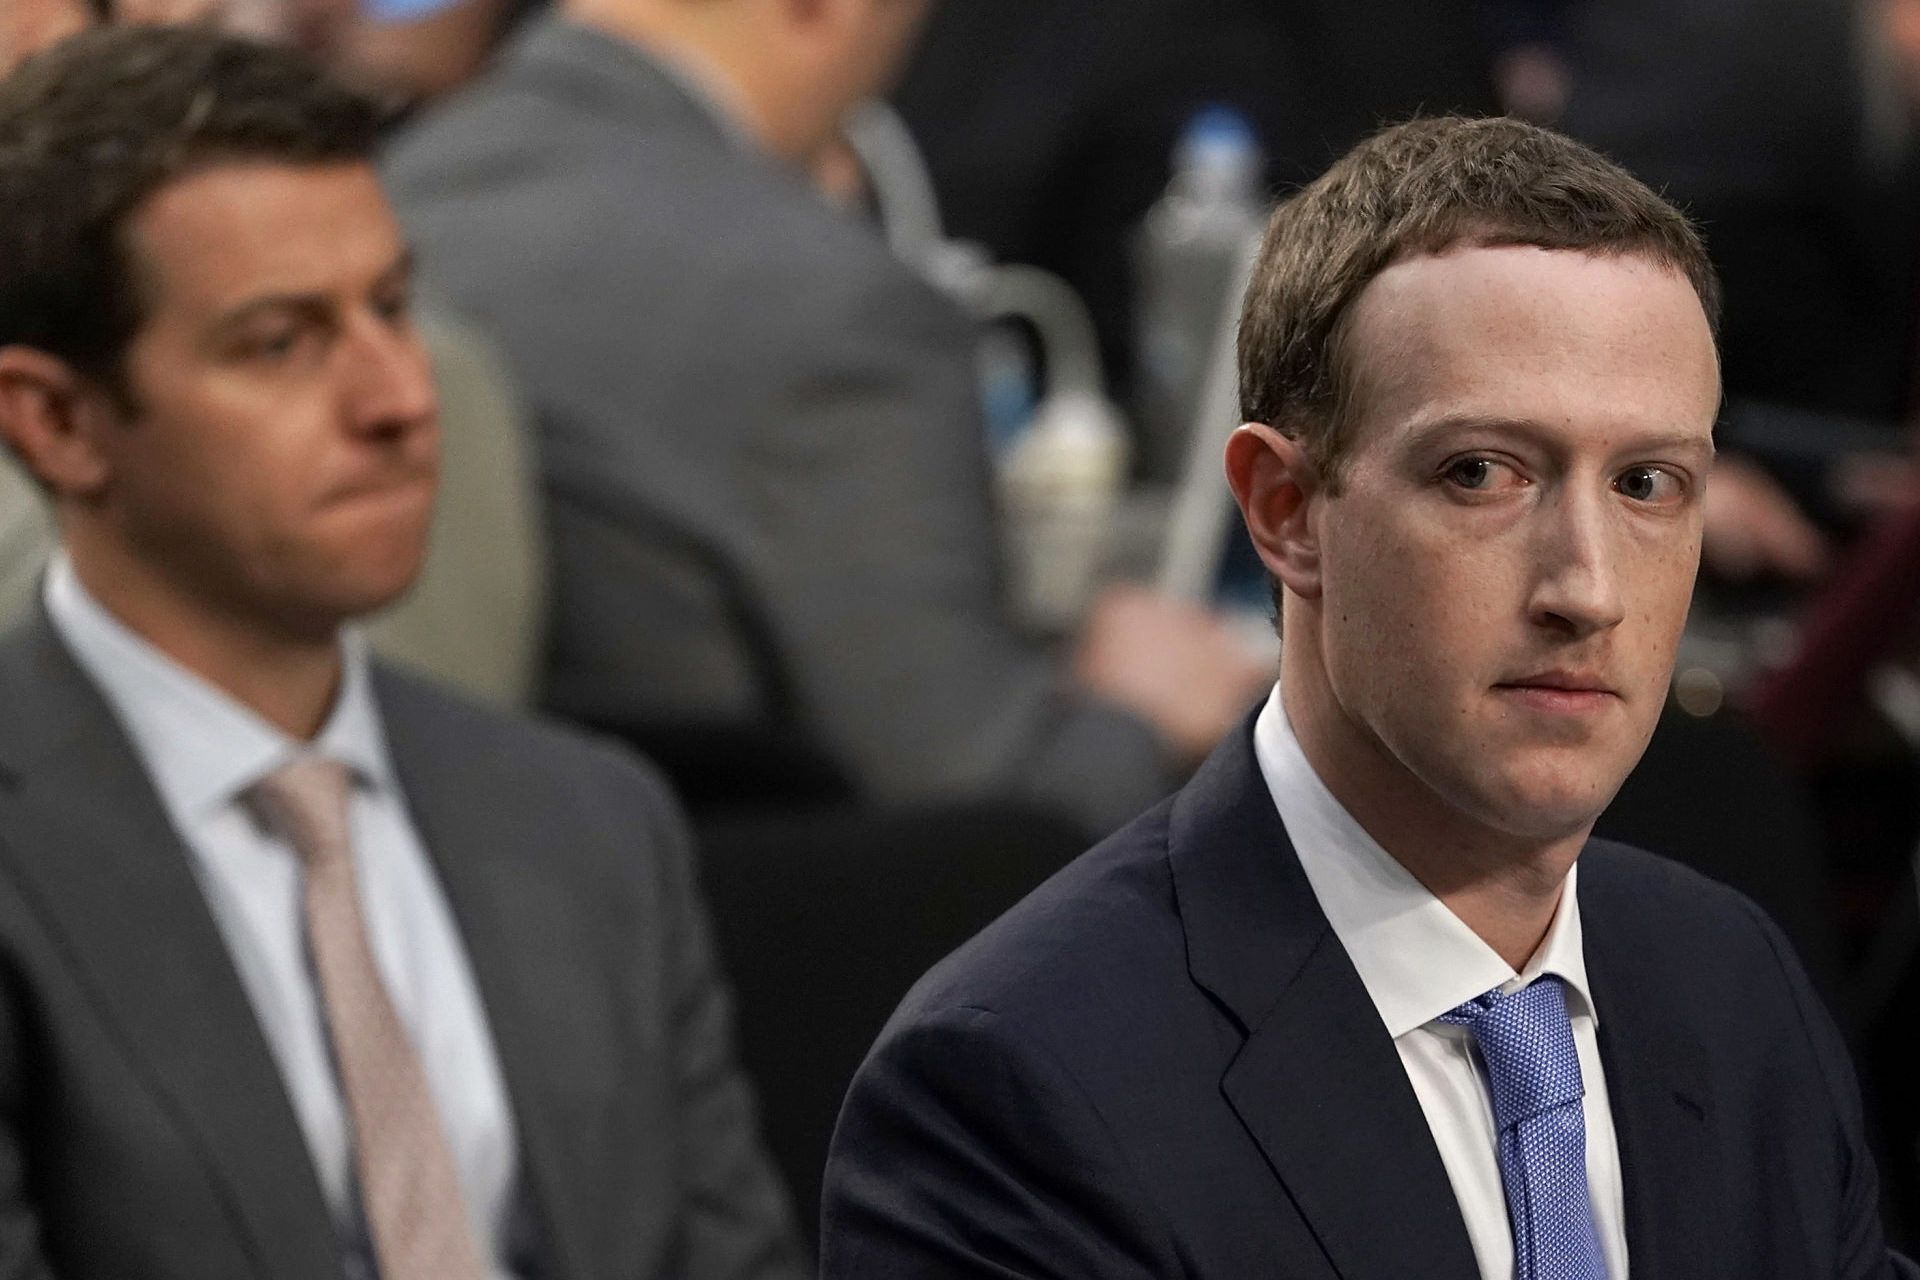 مارک زاکربرگ / Mark Zuckerberg در جلسه مجلس سنا با کت شلوار